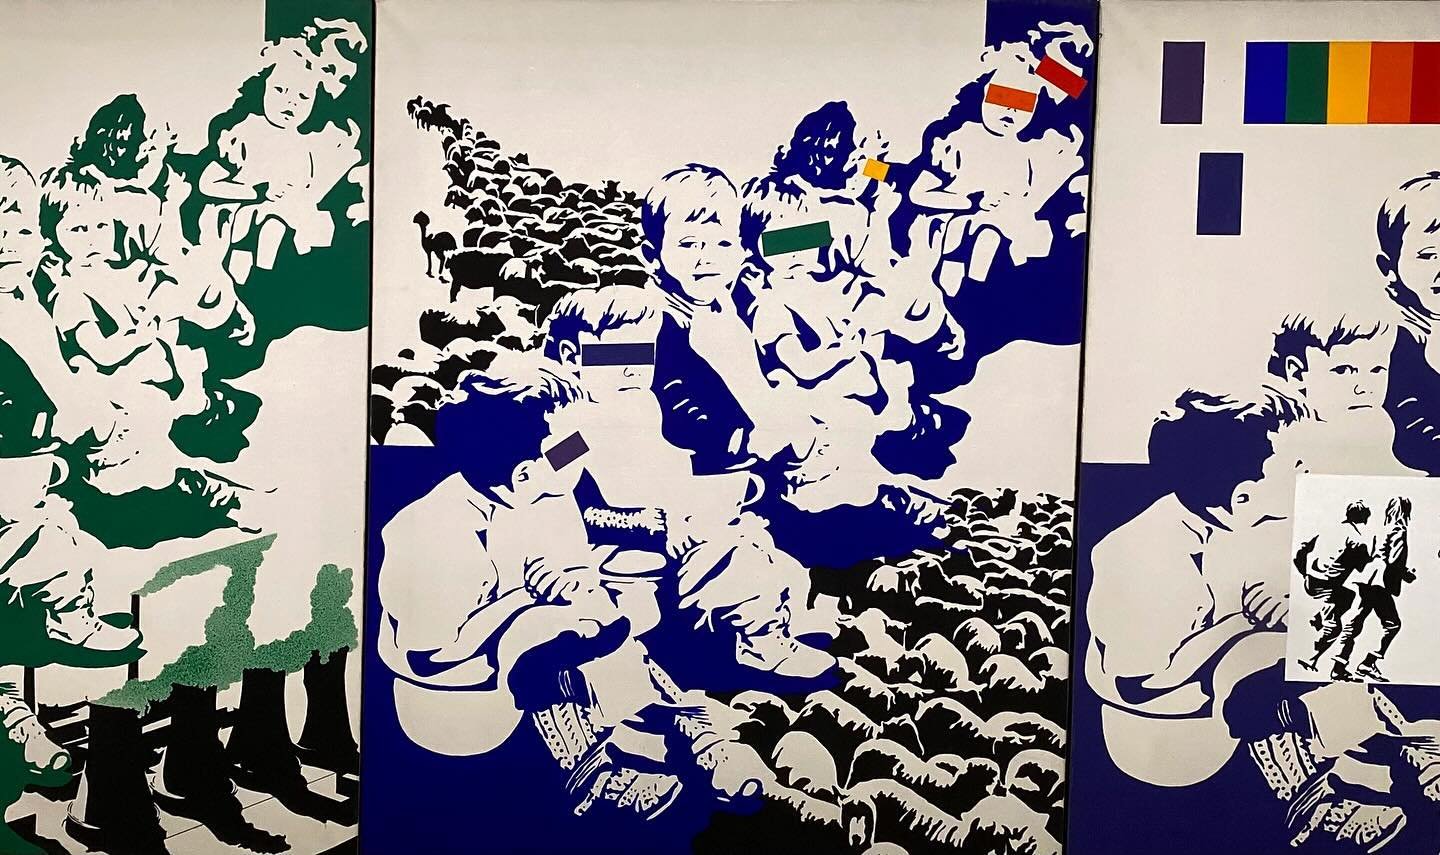 #AndyInspiration - Petit tour obligatoire au @centrepompidou pour r&eacute;viser ses classiques d&rsquo;art contemporain 😉

👤 : Ivan Messac
🔳 : Les Chieurs, 1972
👐🏼 : Acrylique sur toile
📍 : @centrepompidou - Exposition permanente

#DeLArtDansN